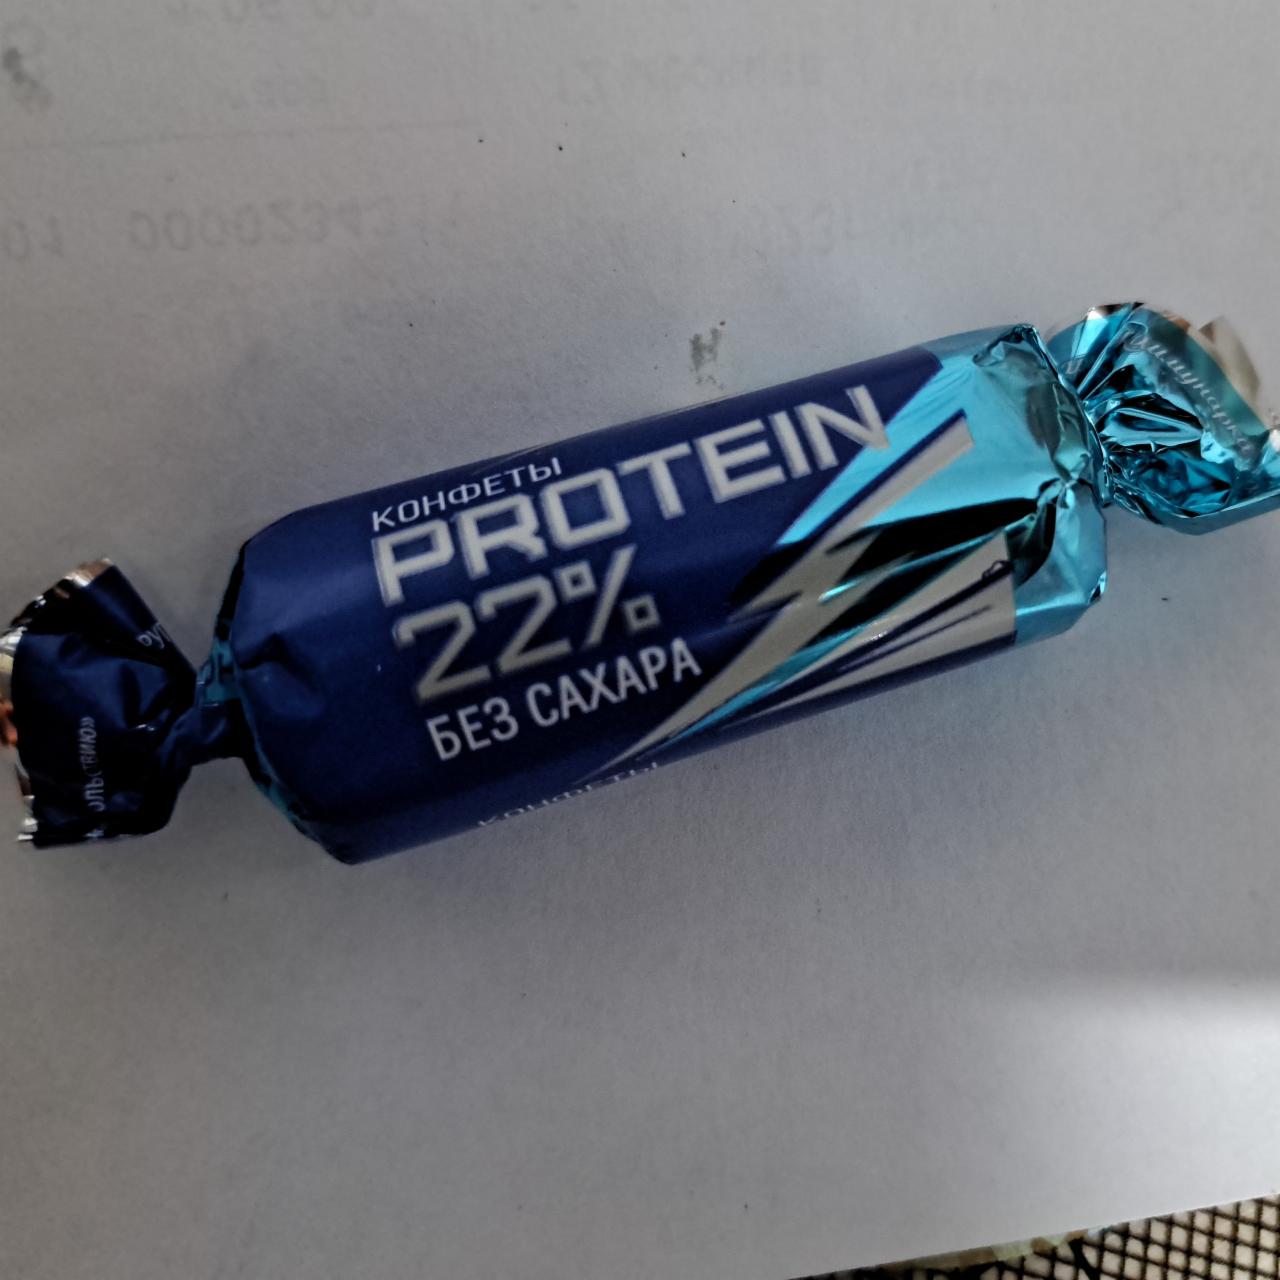 Фото - Конфеты protein 22% без сахара Коммунарка